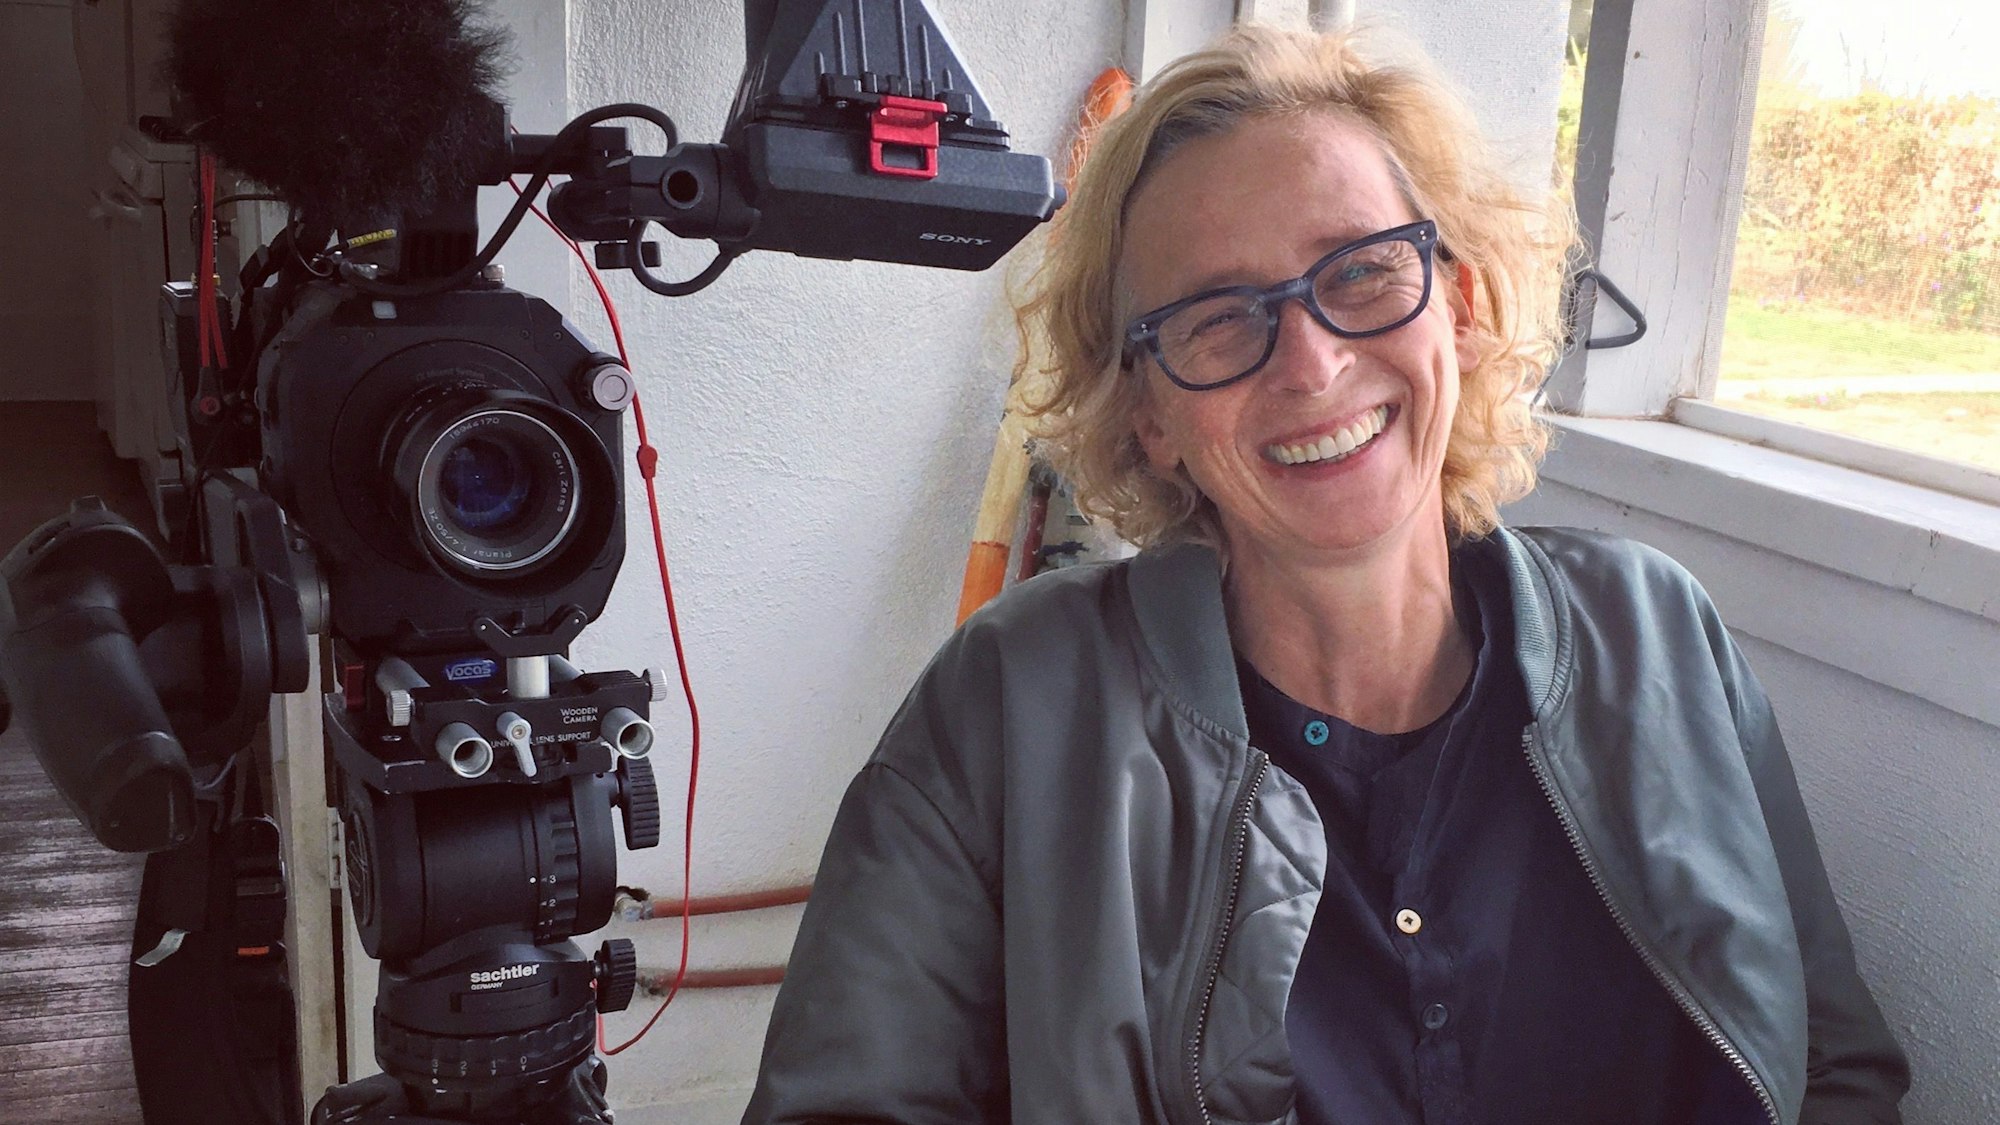 Die Fernsehjournalistin und Dokumentarfilmregisseurin Claudia Müller im Porträt. Neben ihr steht eine Kamera.